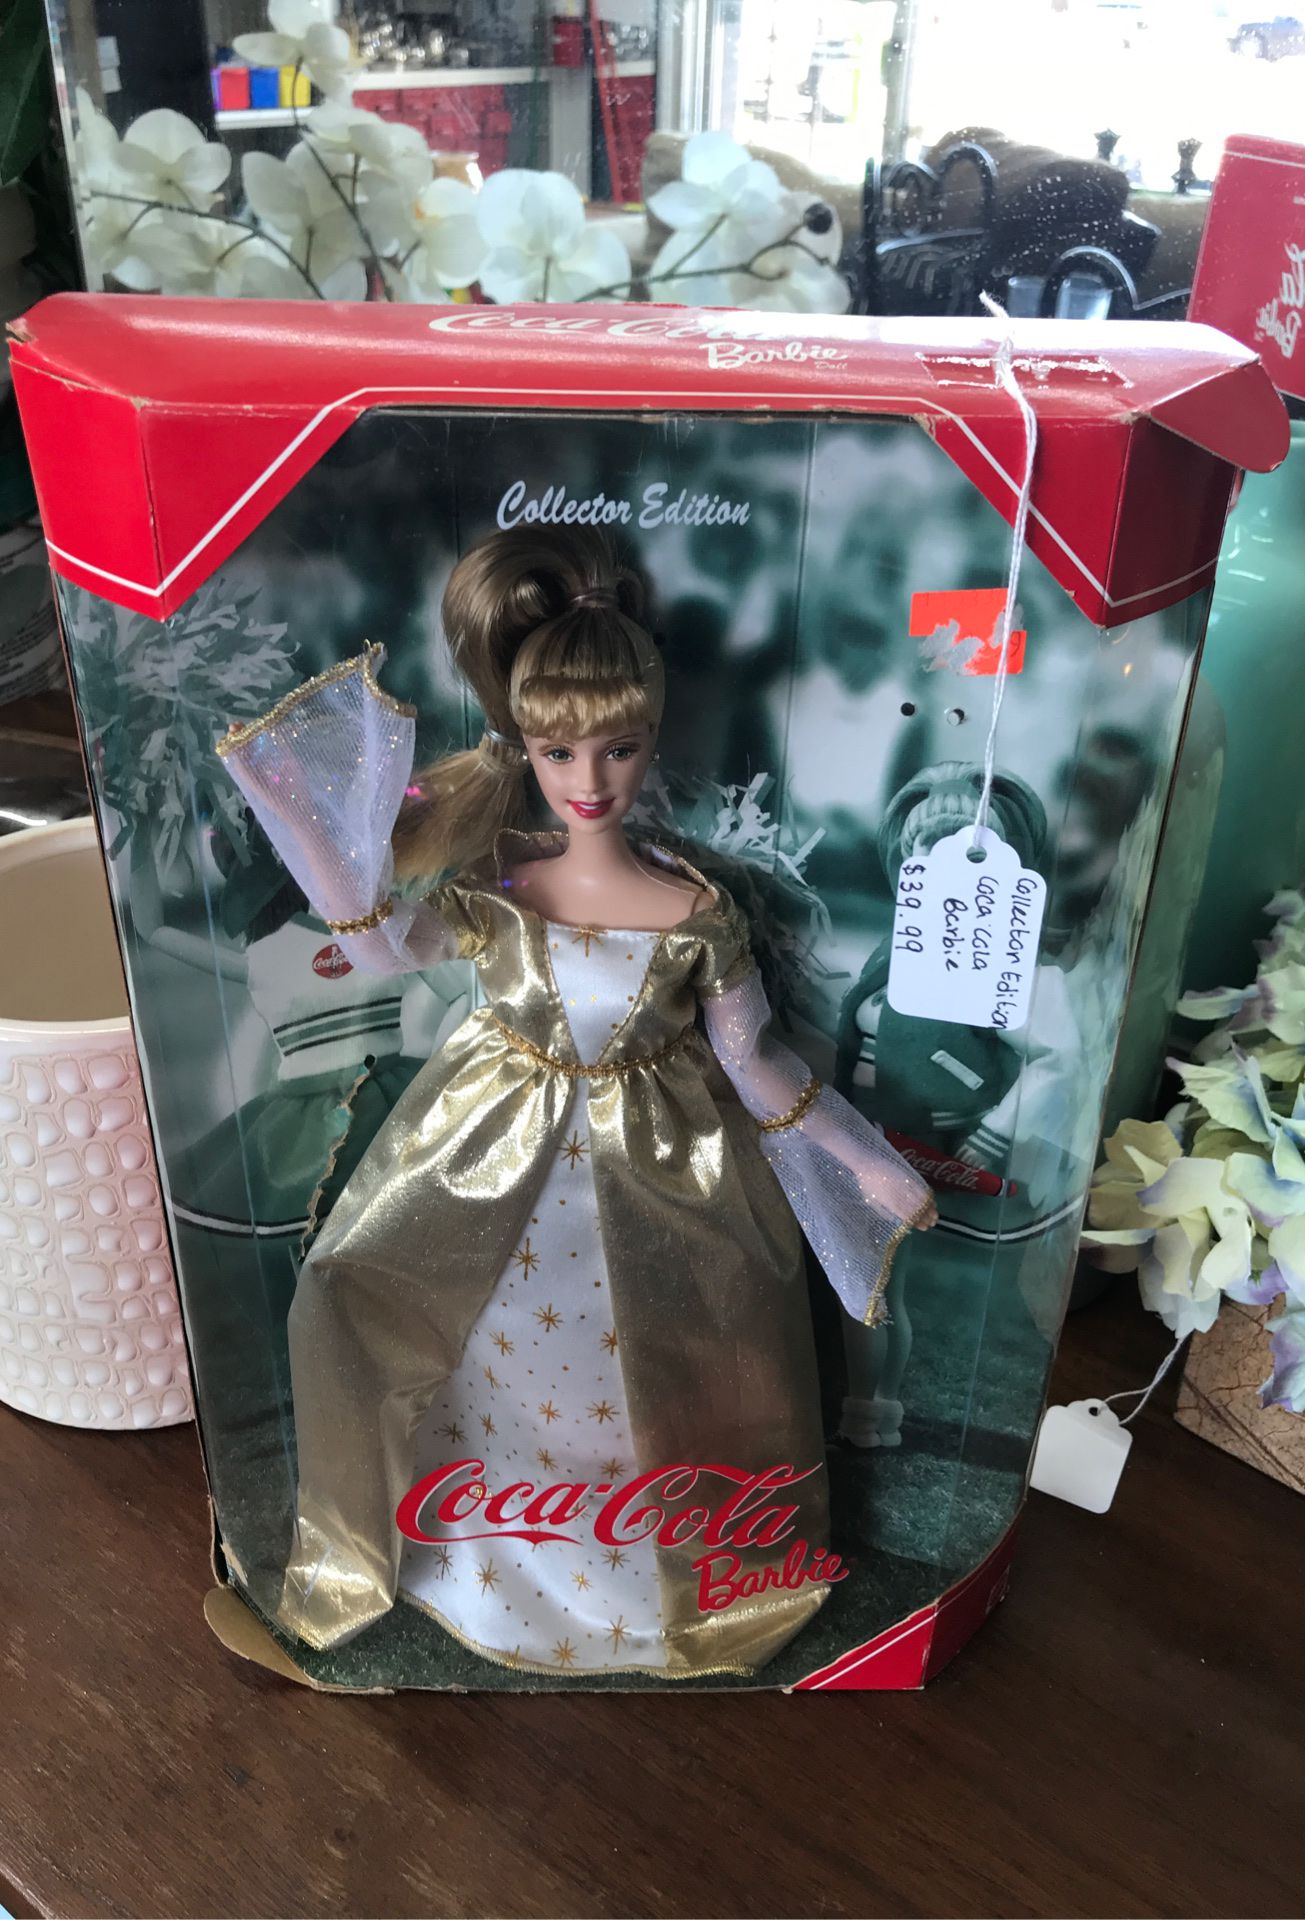 Coca cola collection edition Barbie